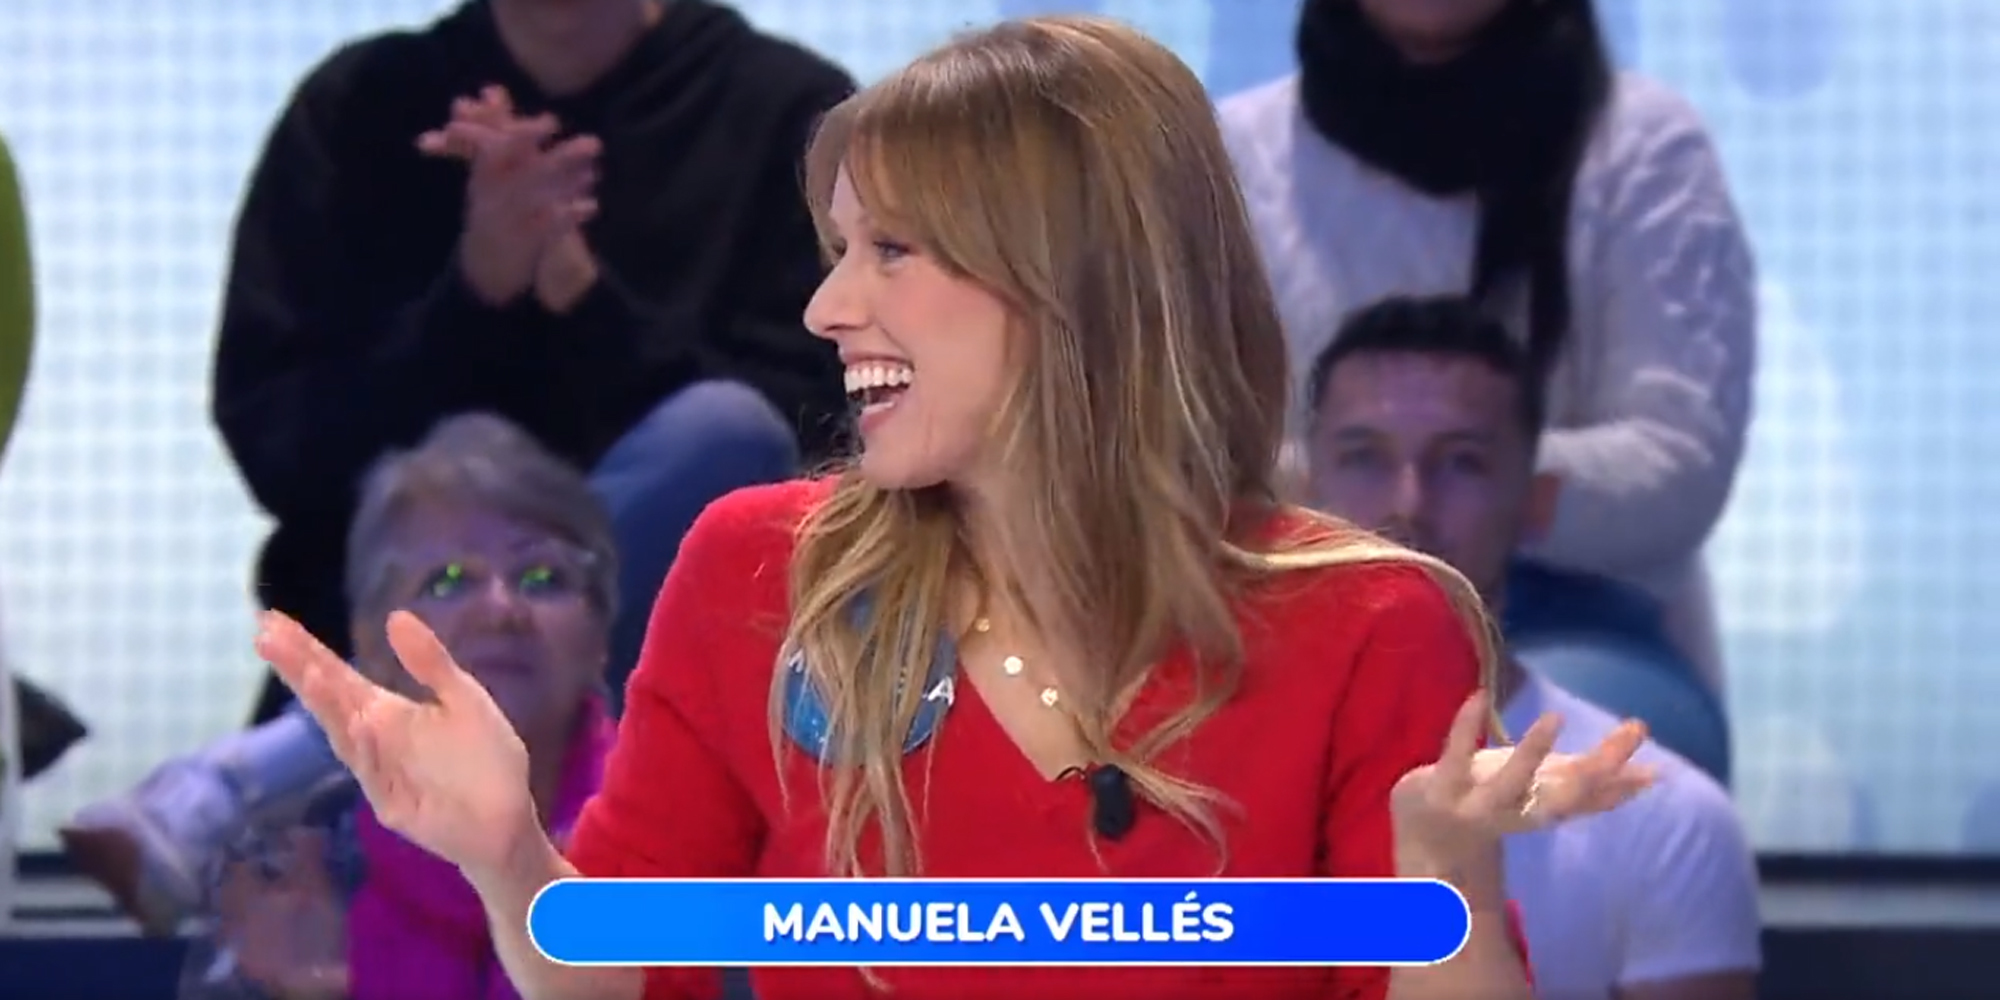 Manuela Vells participando en Pasapalabra.